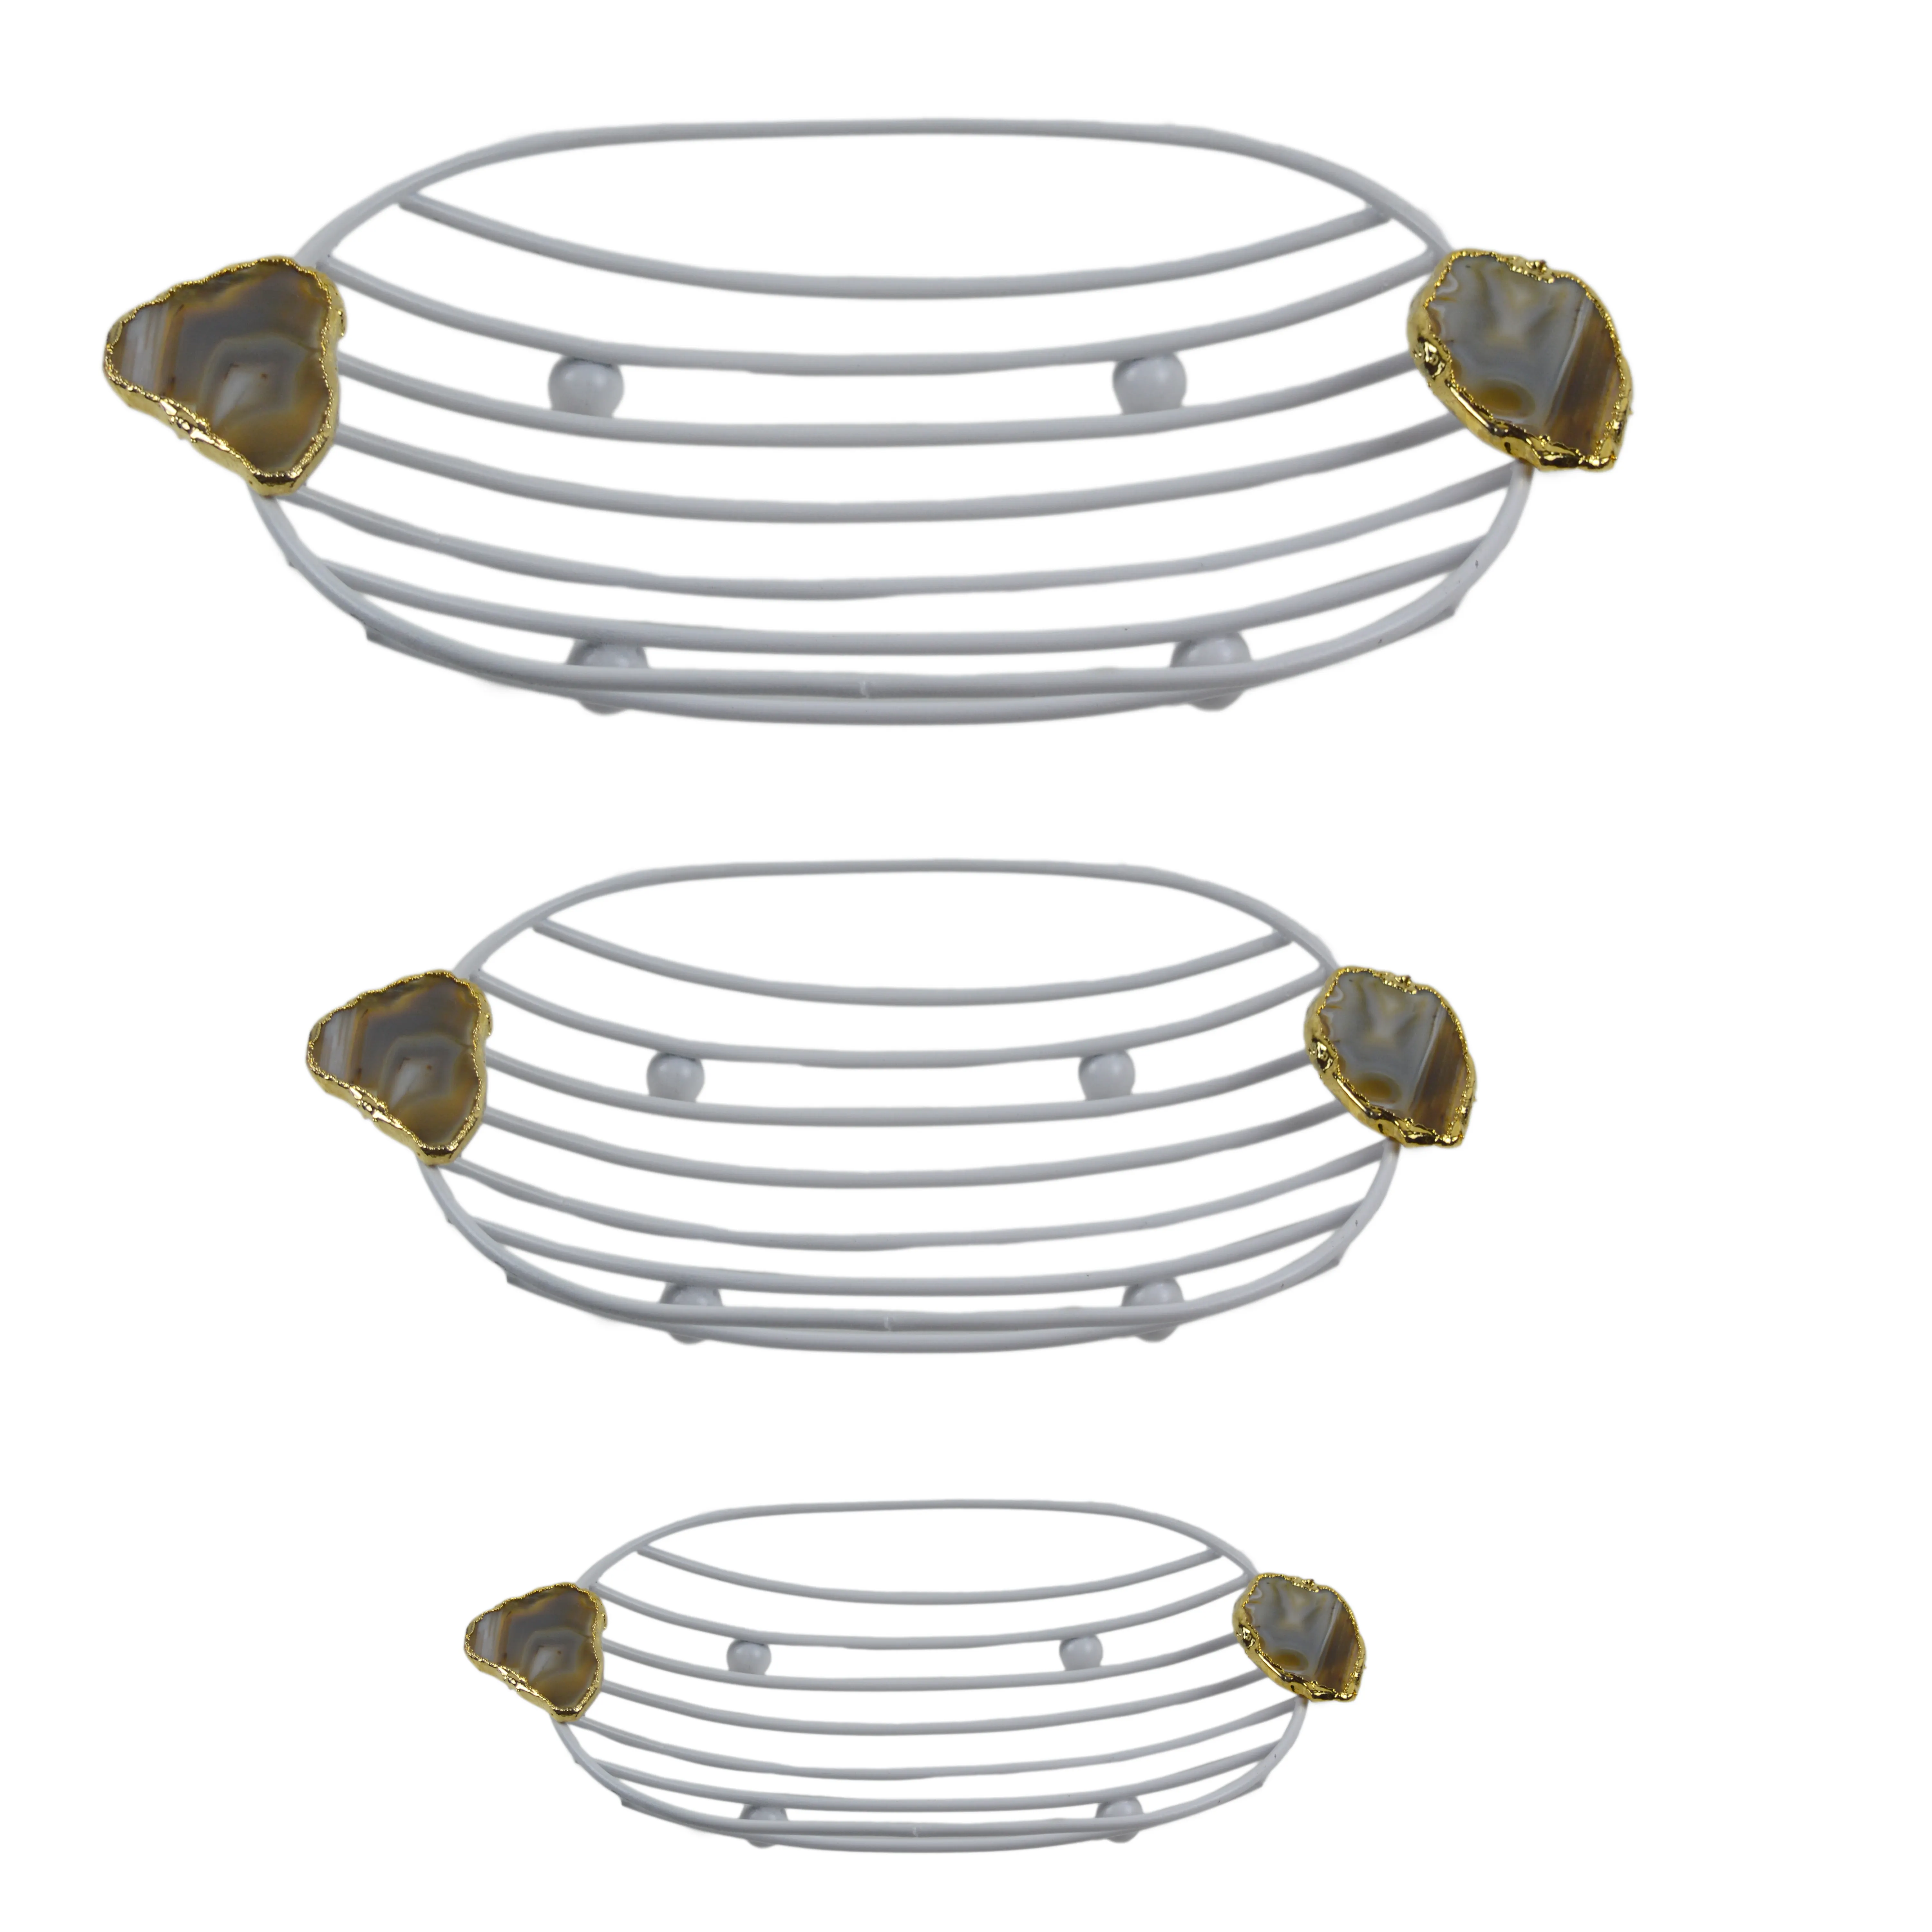 瑪瑙ハンドグリップ鉄金属デザインバスケット新鮮な塗装仕上げデザインのテーブル装飾食品収納バスケット